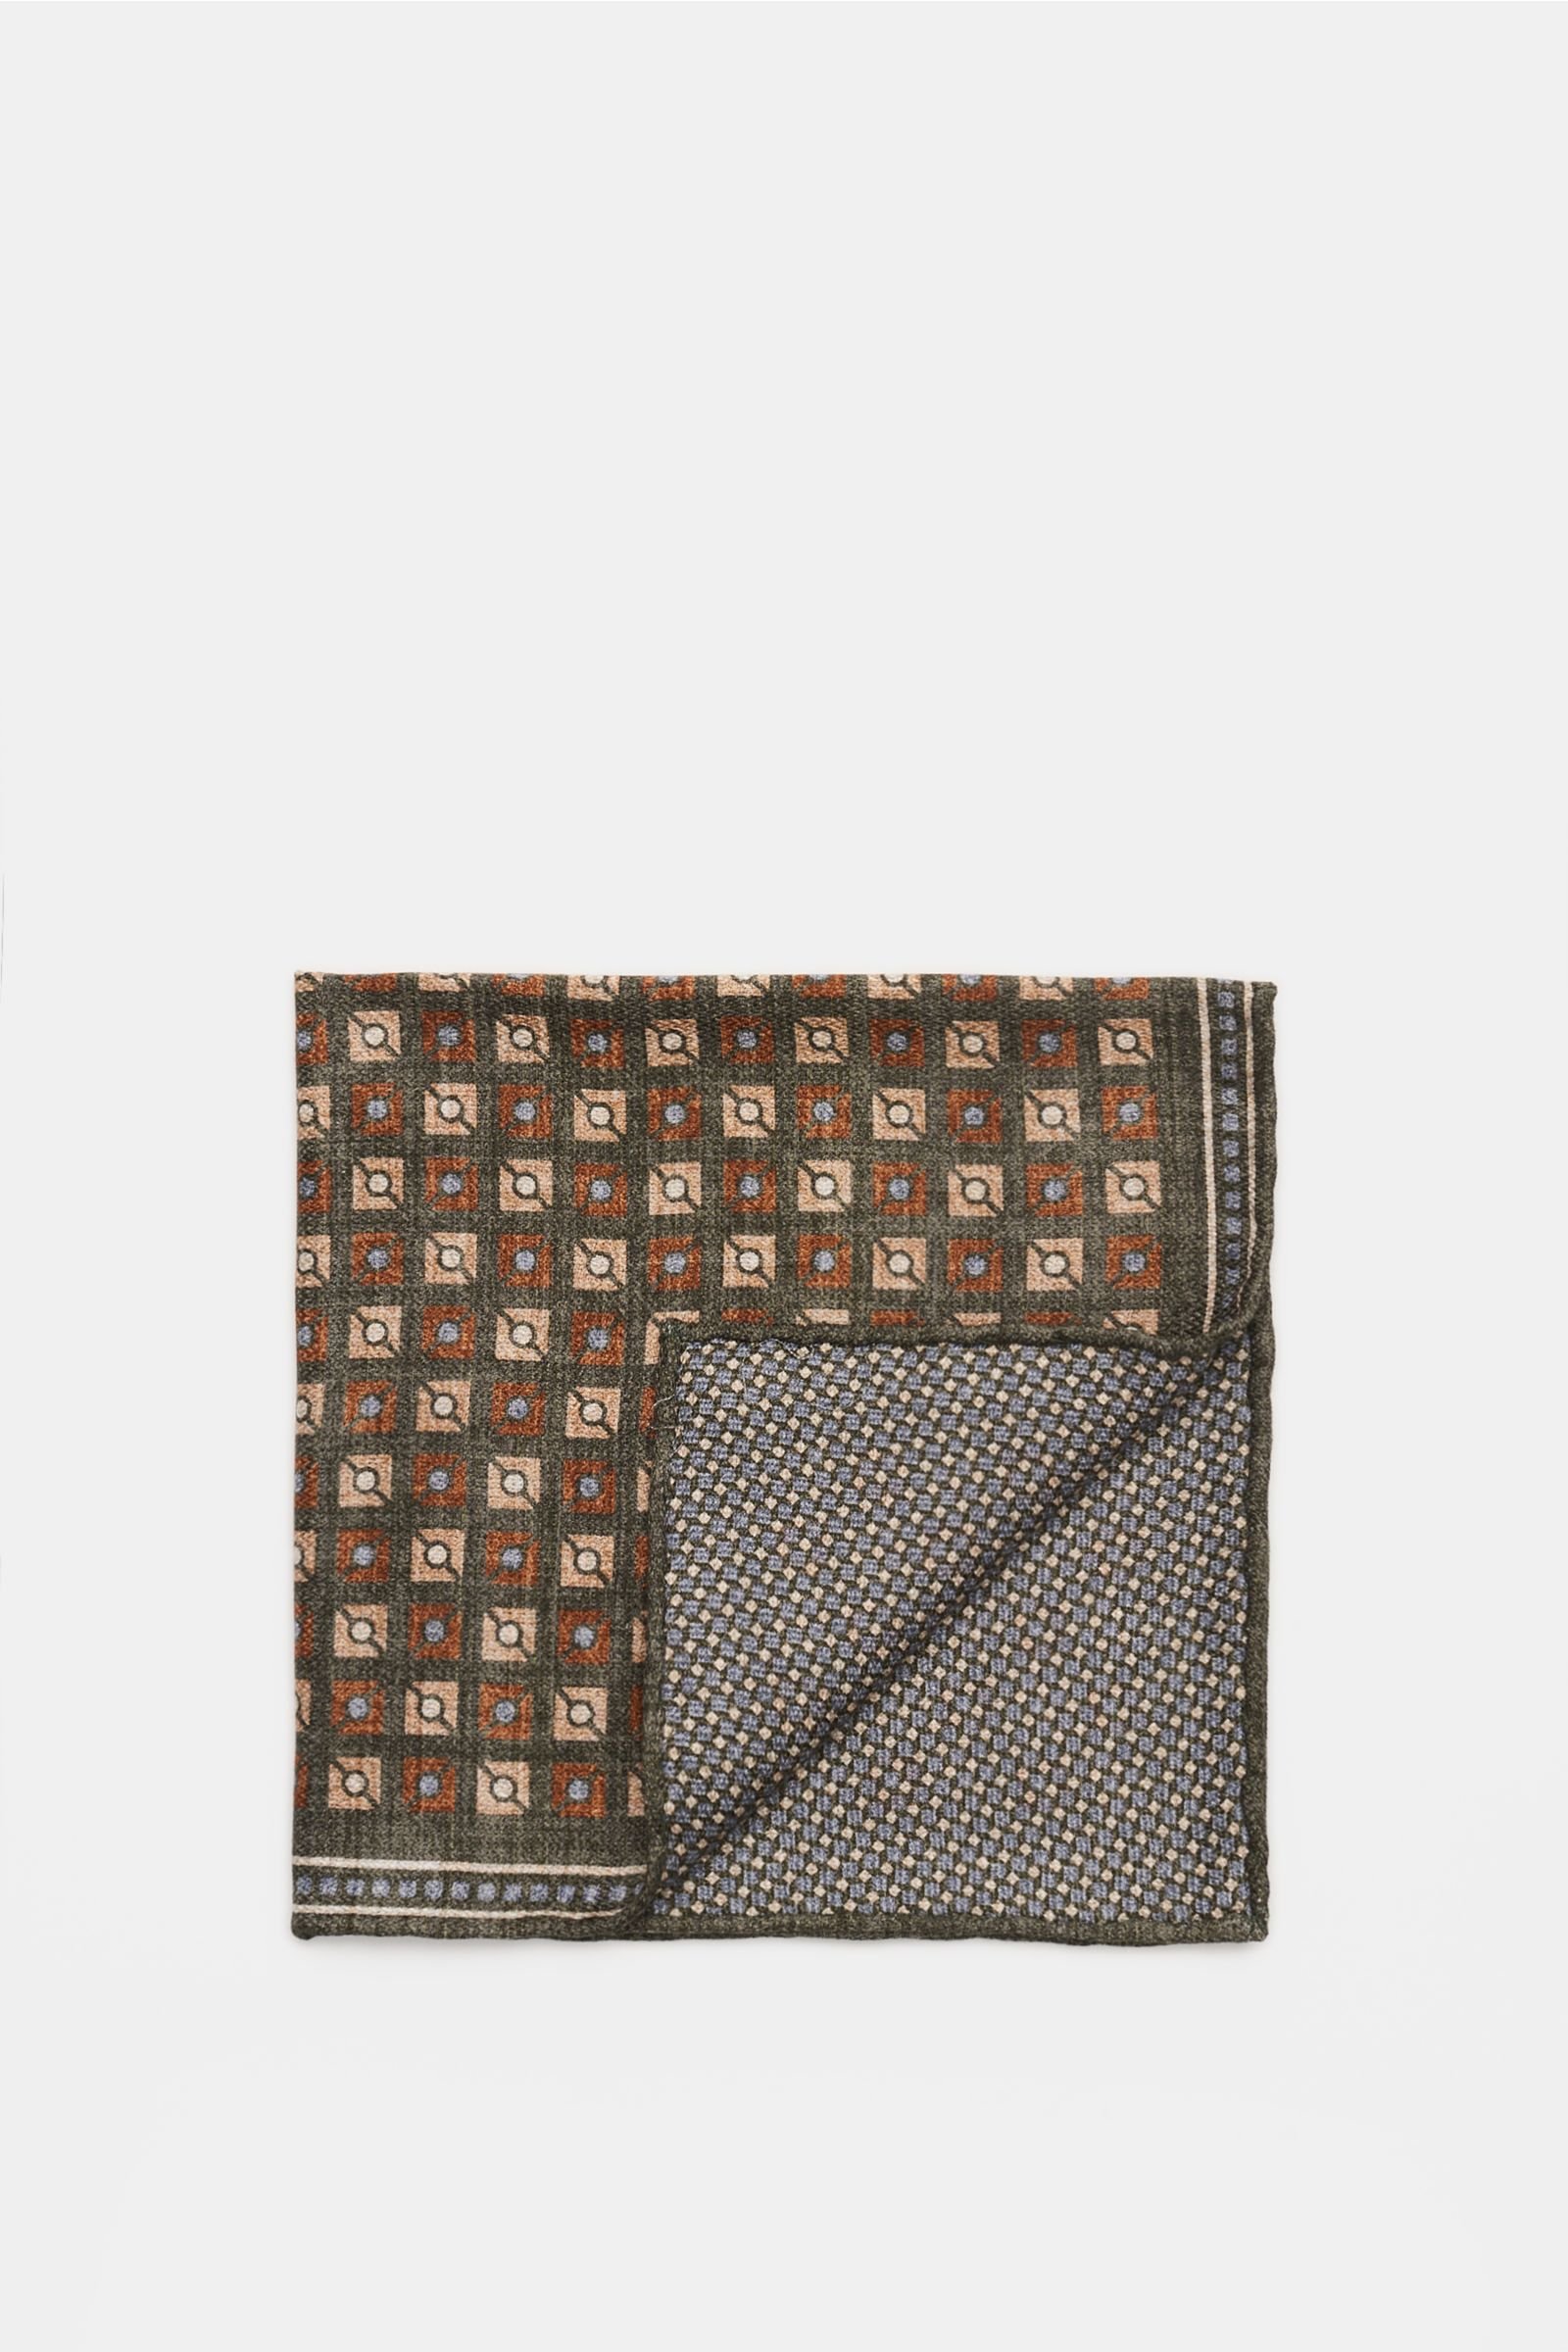 Pocket square dark green/beige patterned